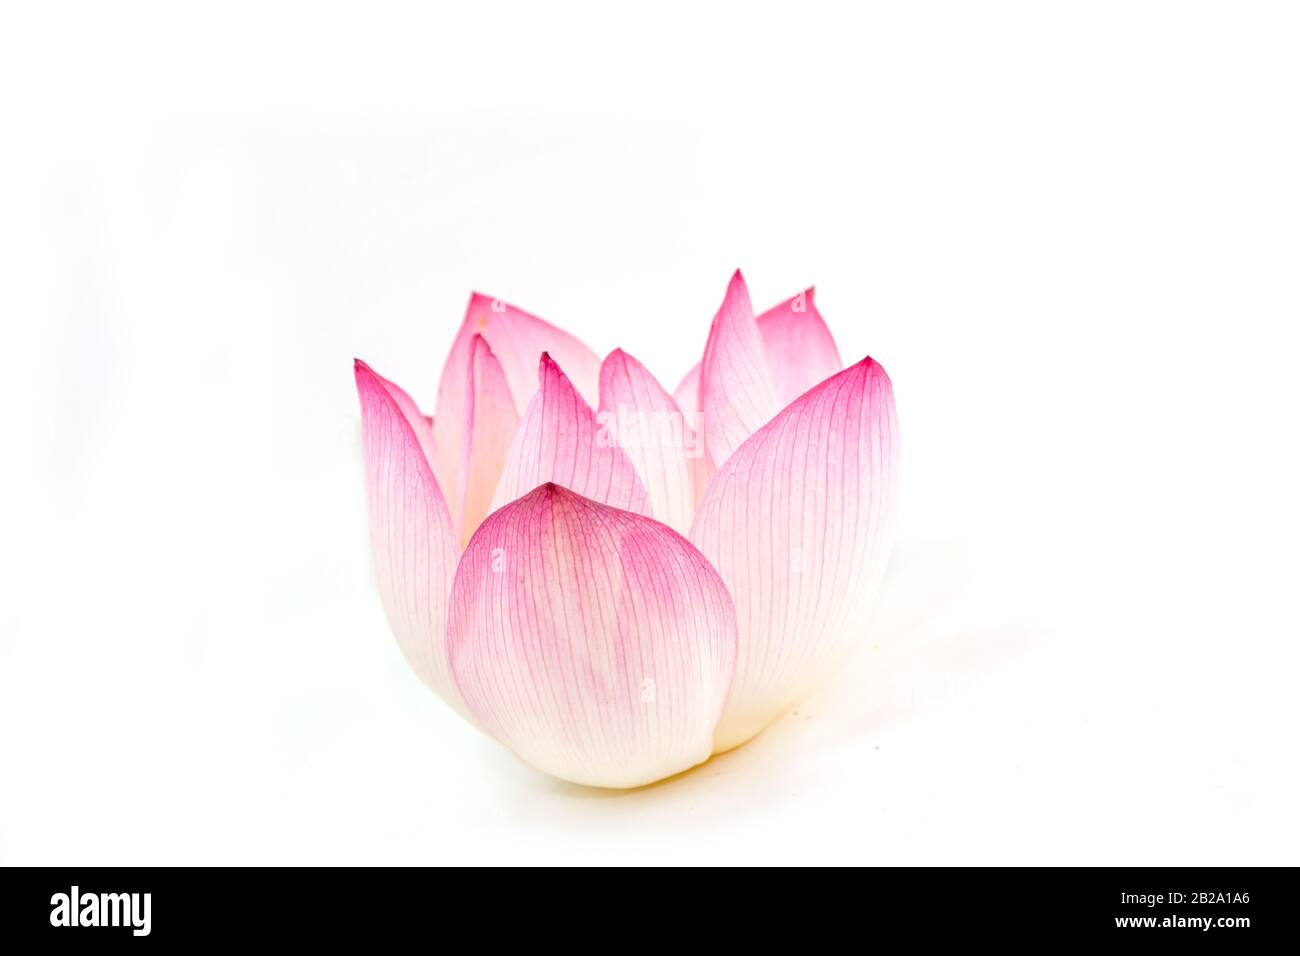 lotus on white background Stock Photo